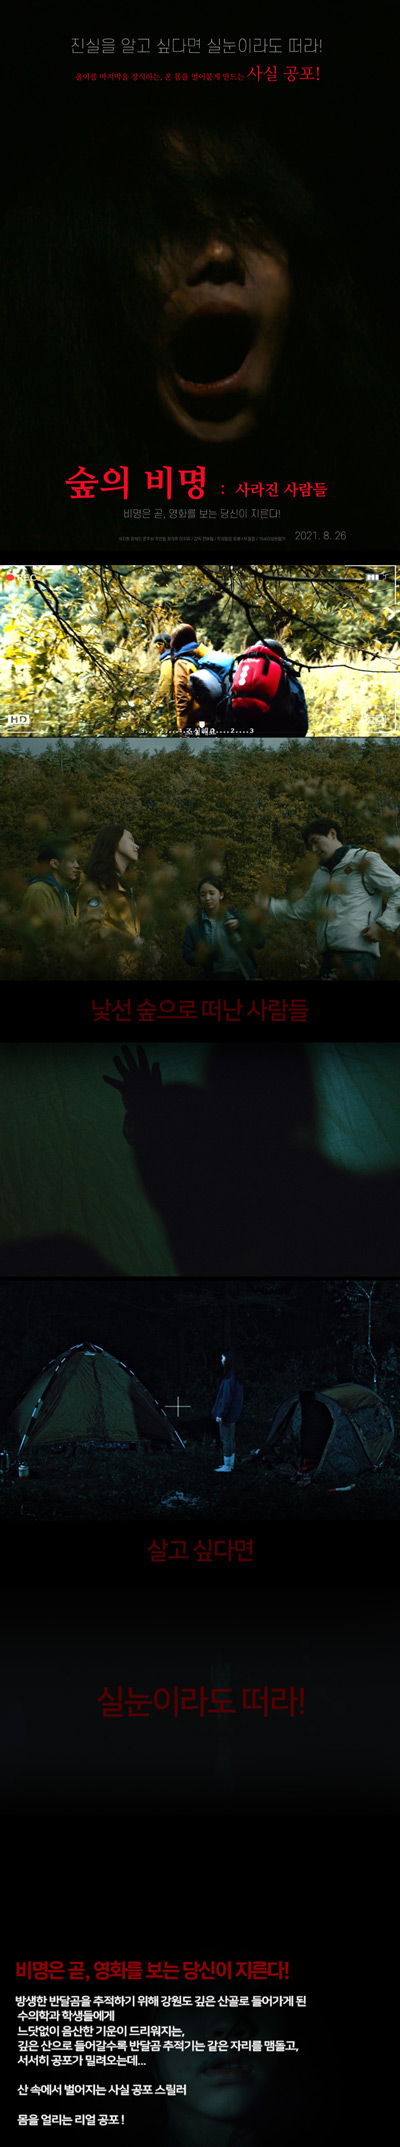 [9월 최신][숲의 비명: 사라진 사람들]쫄보 길치는 절대 봐서 안되는 극사실 공포 영화